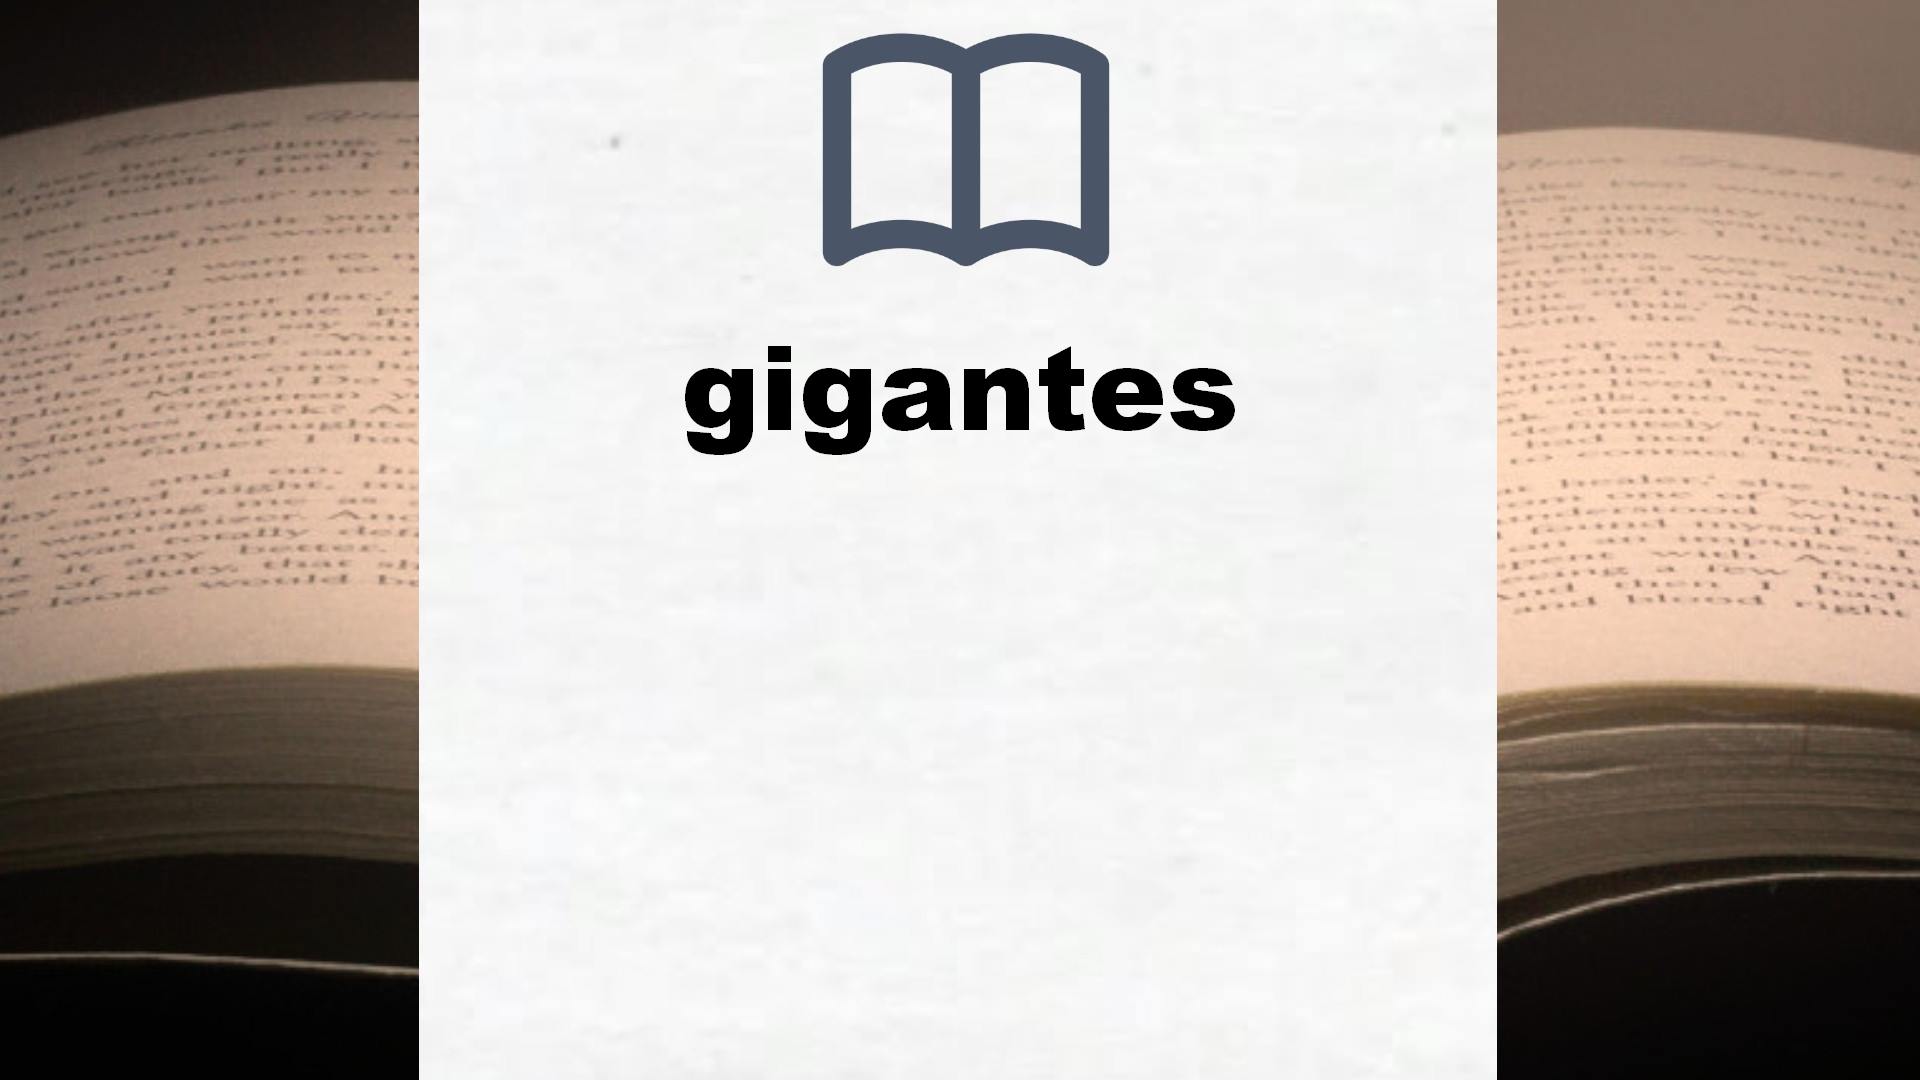 Libros sobre gigantes